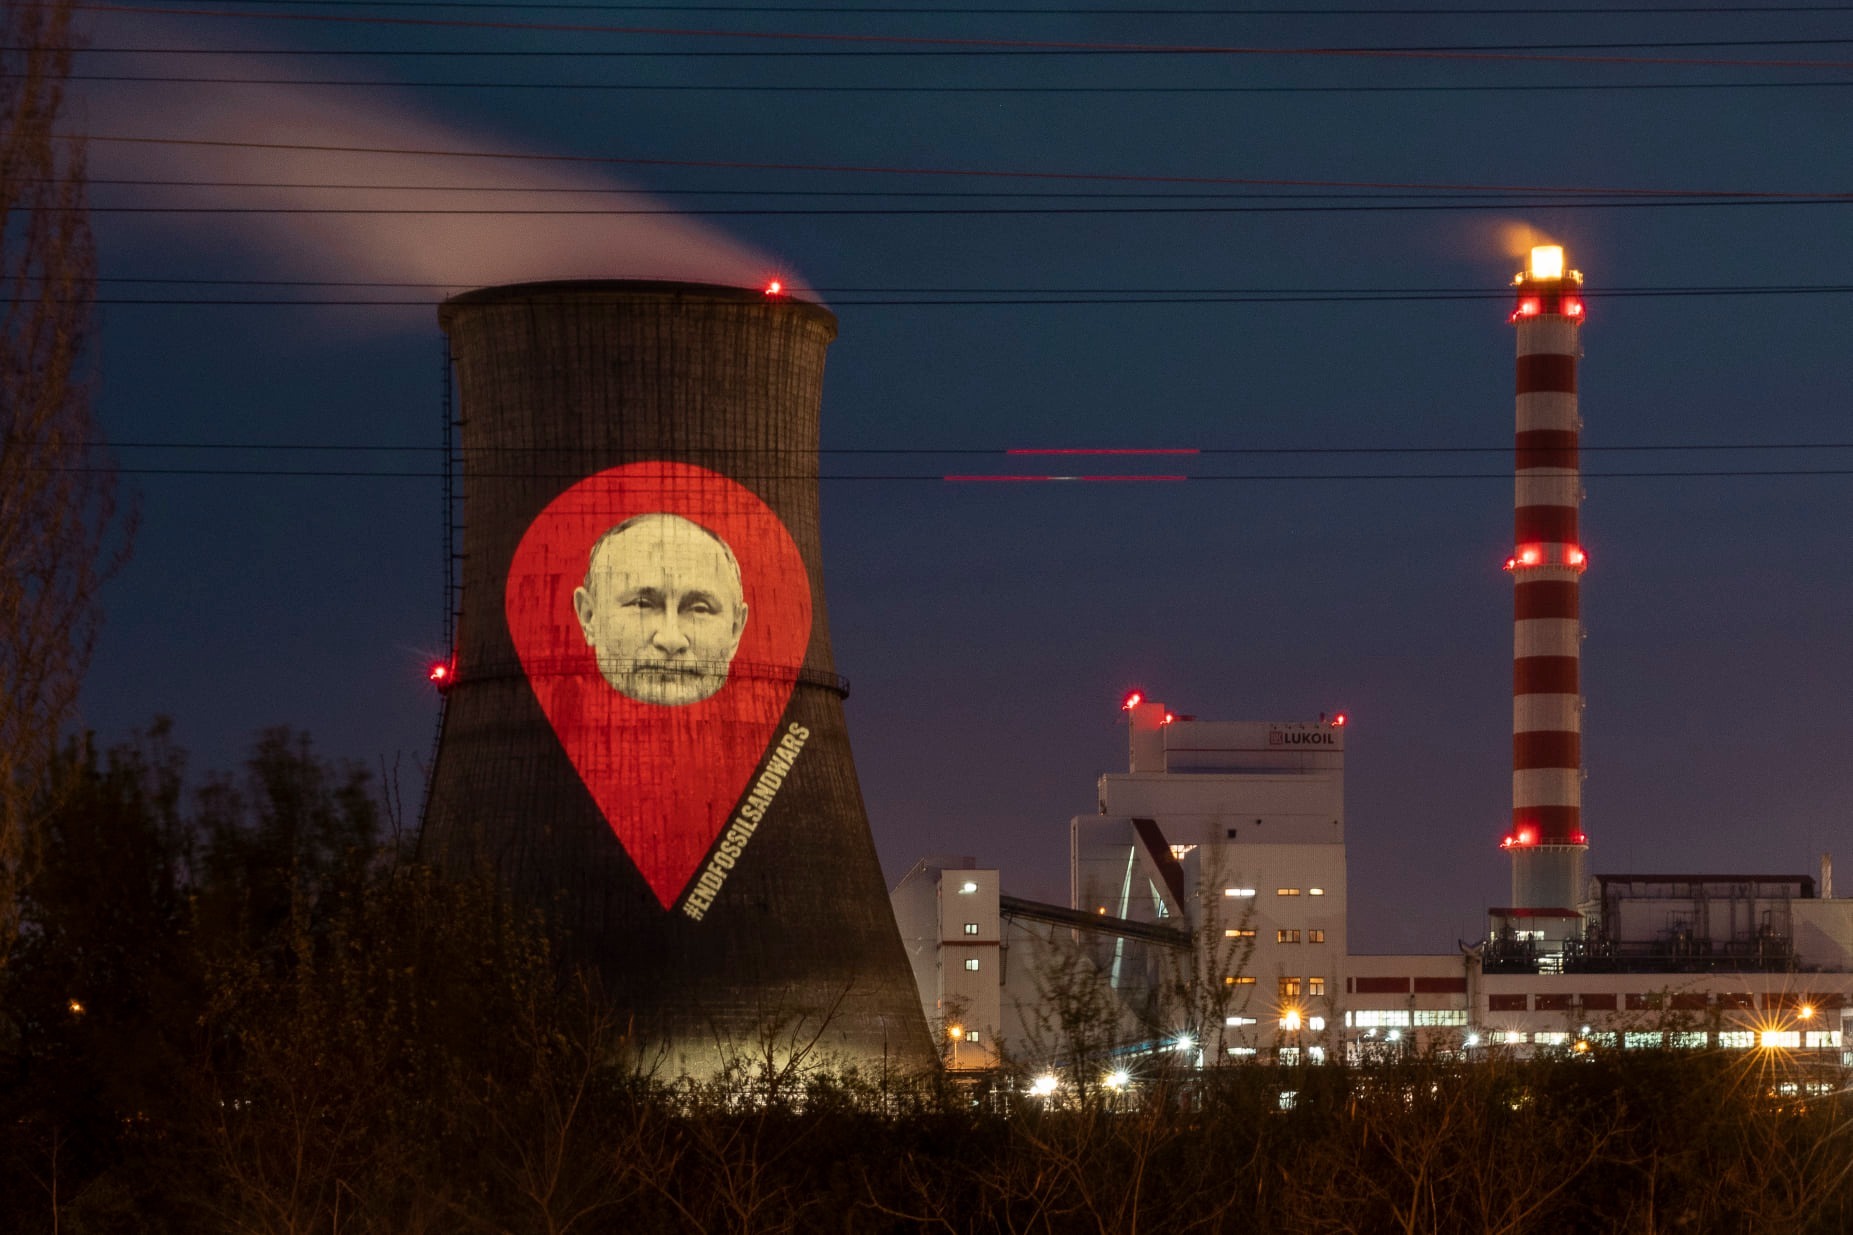 Chipul lui Vladimir Putin a fost proiectat pe turnul rafinăriei Lukoil din Ploiești. GALERIE FOTO